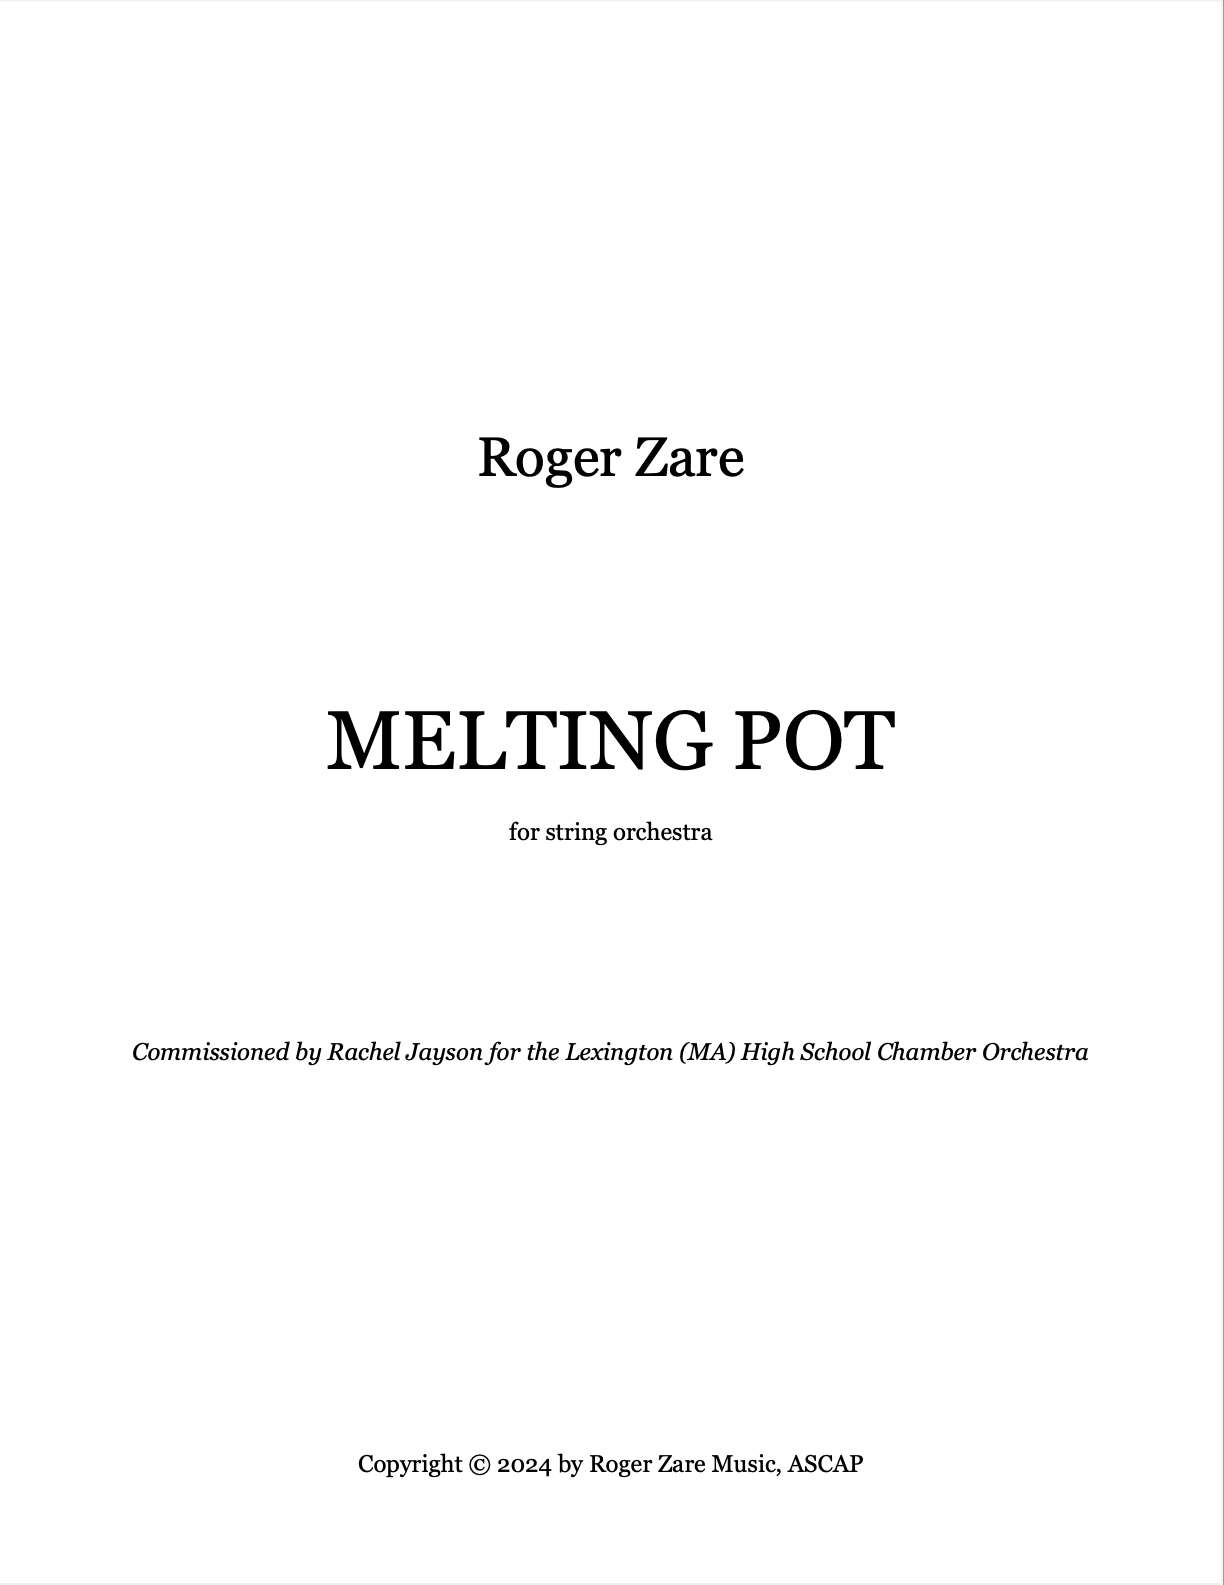 Melting Pot by Roger Zare